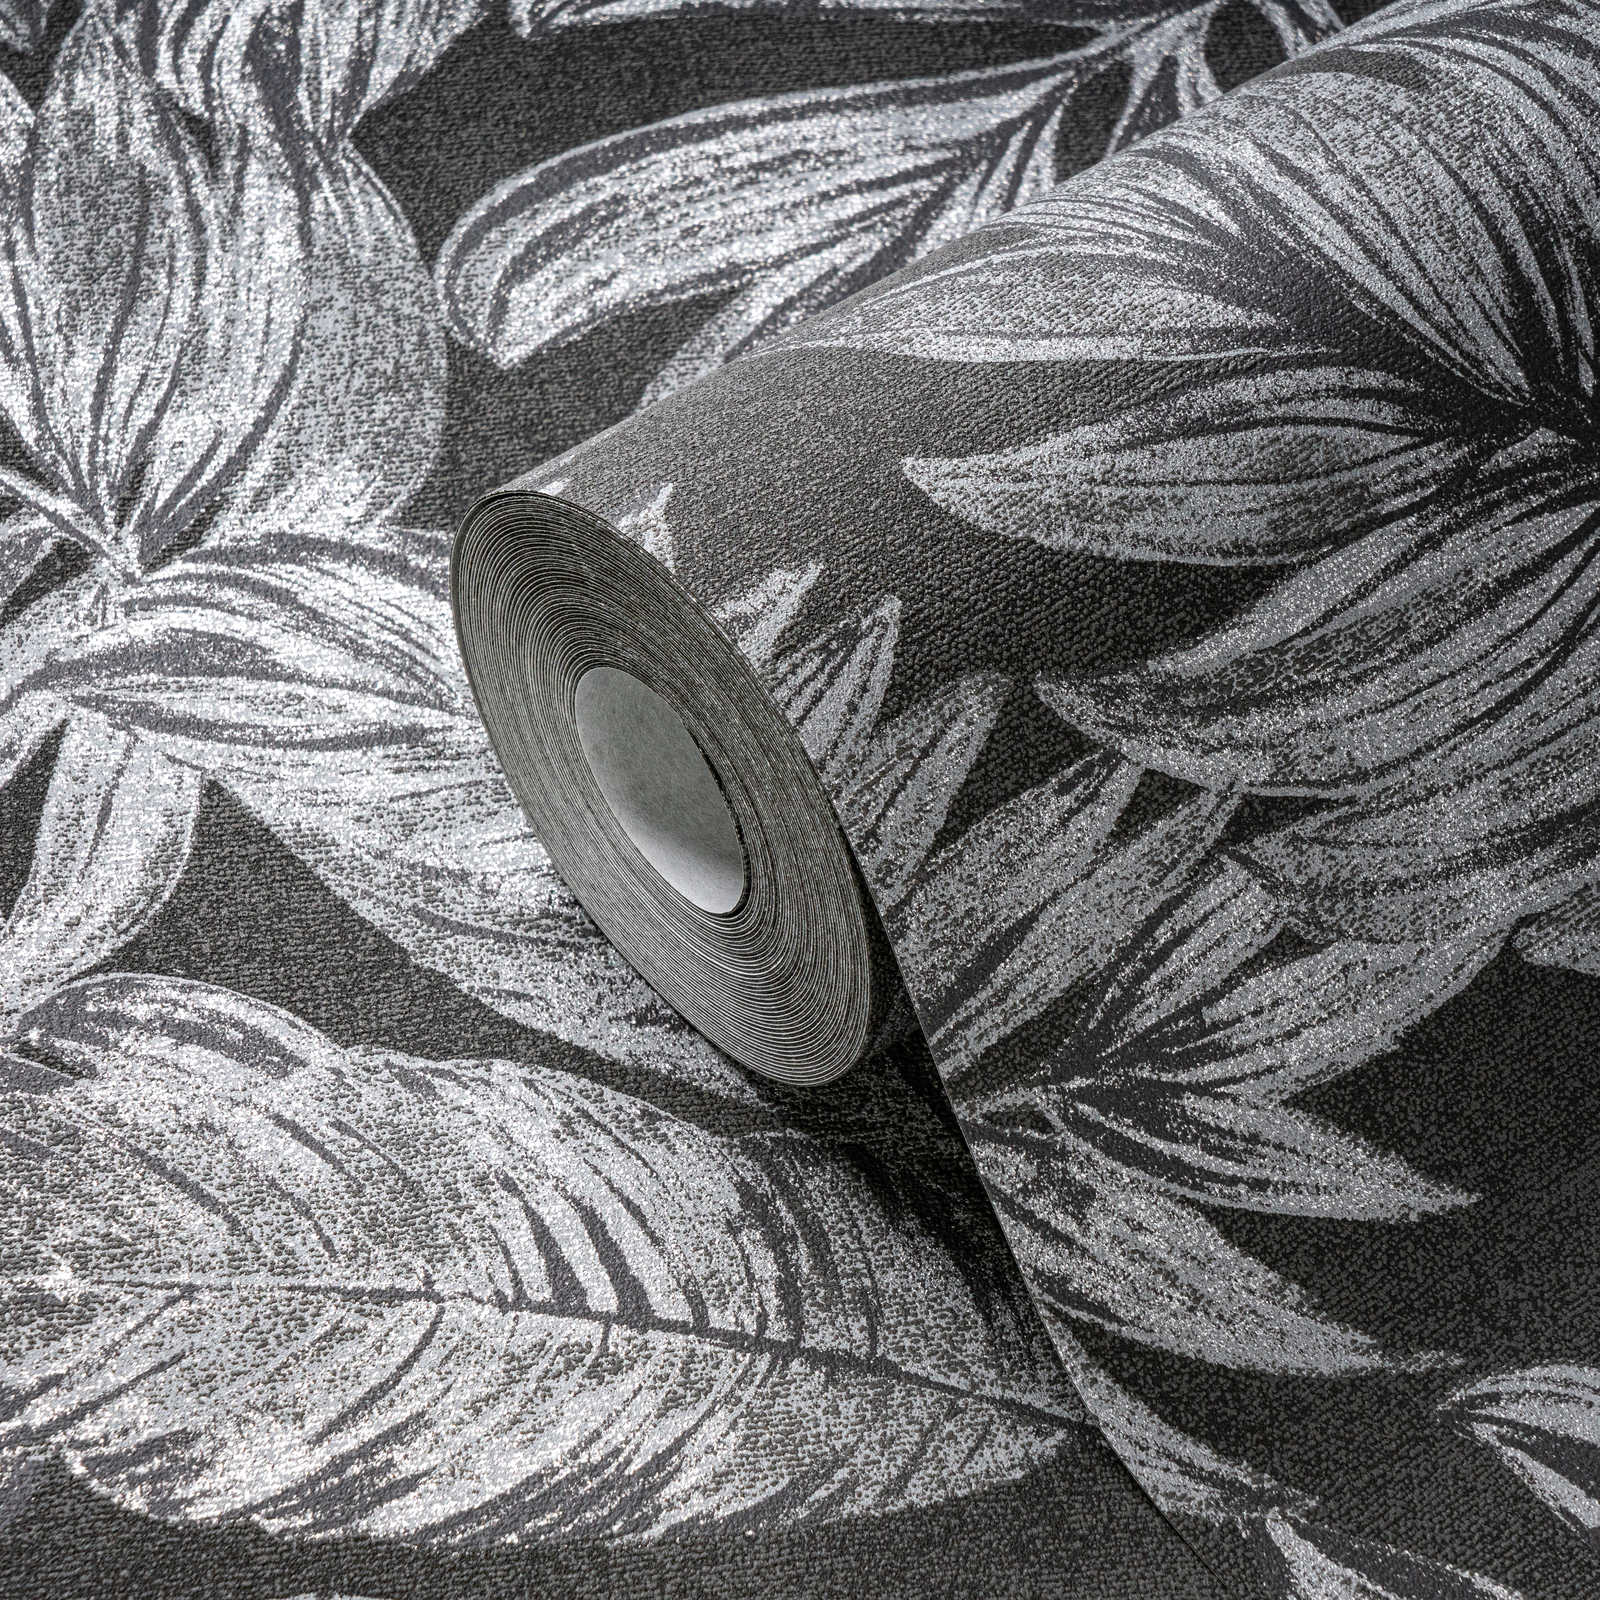             Florale Vliestapete mit Dschungel Bemusterung – Anthrazit, Grau, Silber
        